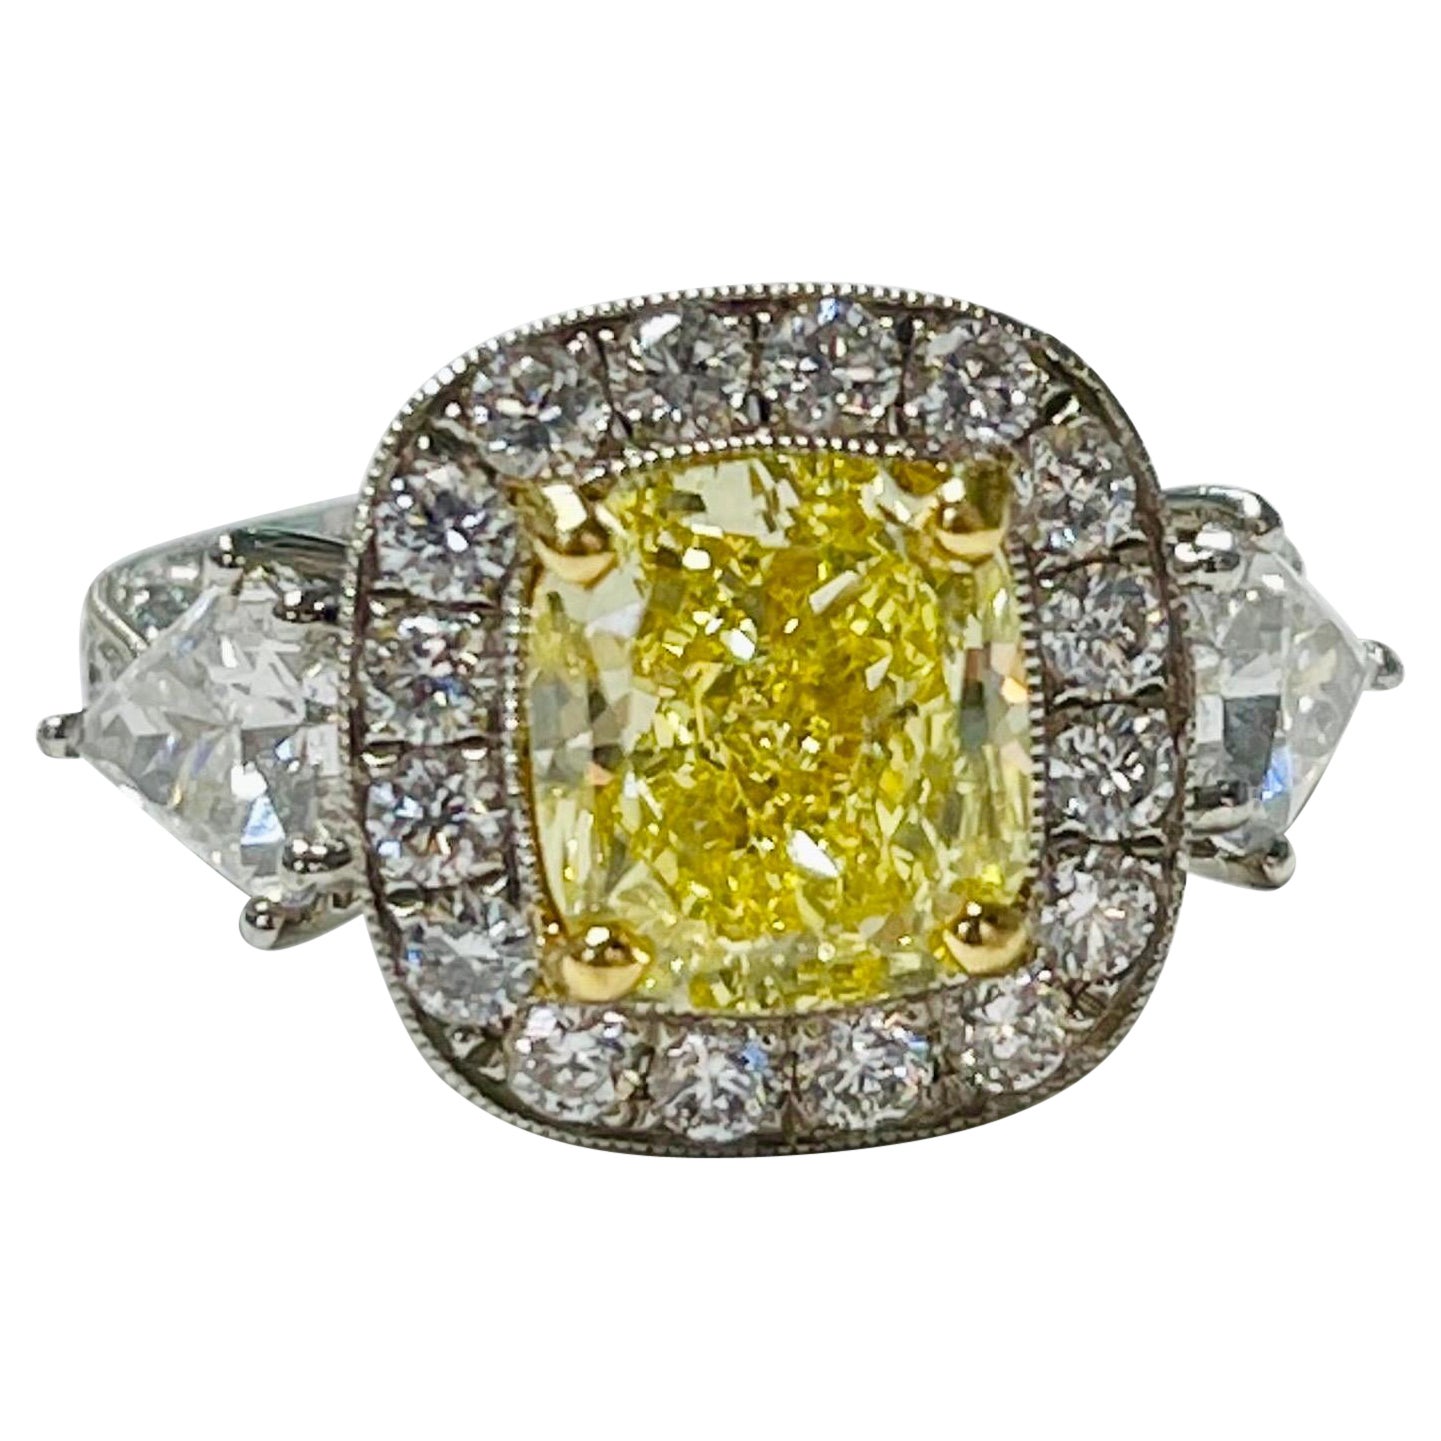 Verlobungsring, GIA-zertifizierter intensiv gelber Fancy-Diamant im Kissenschliff und weißer Diamant